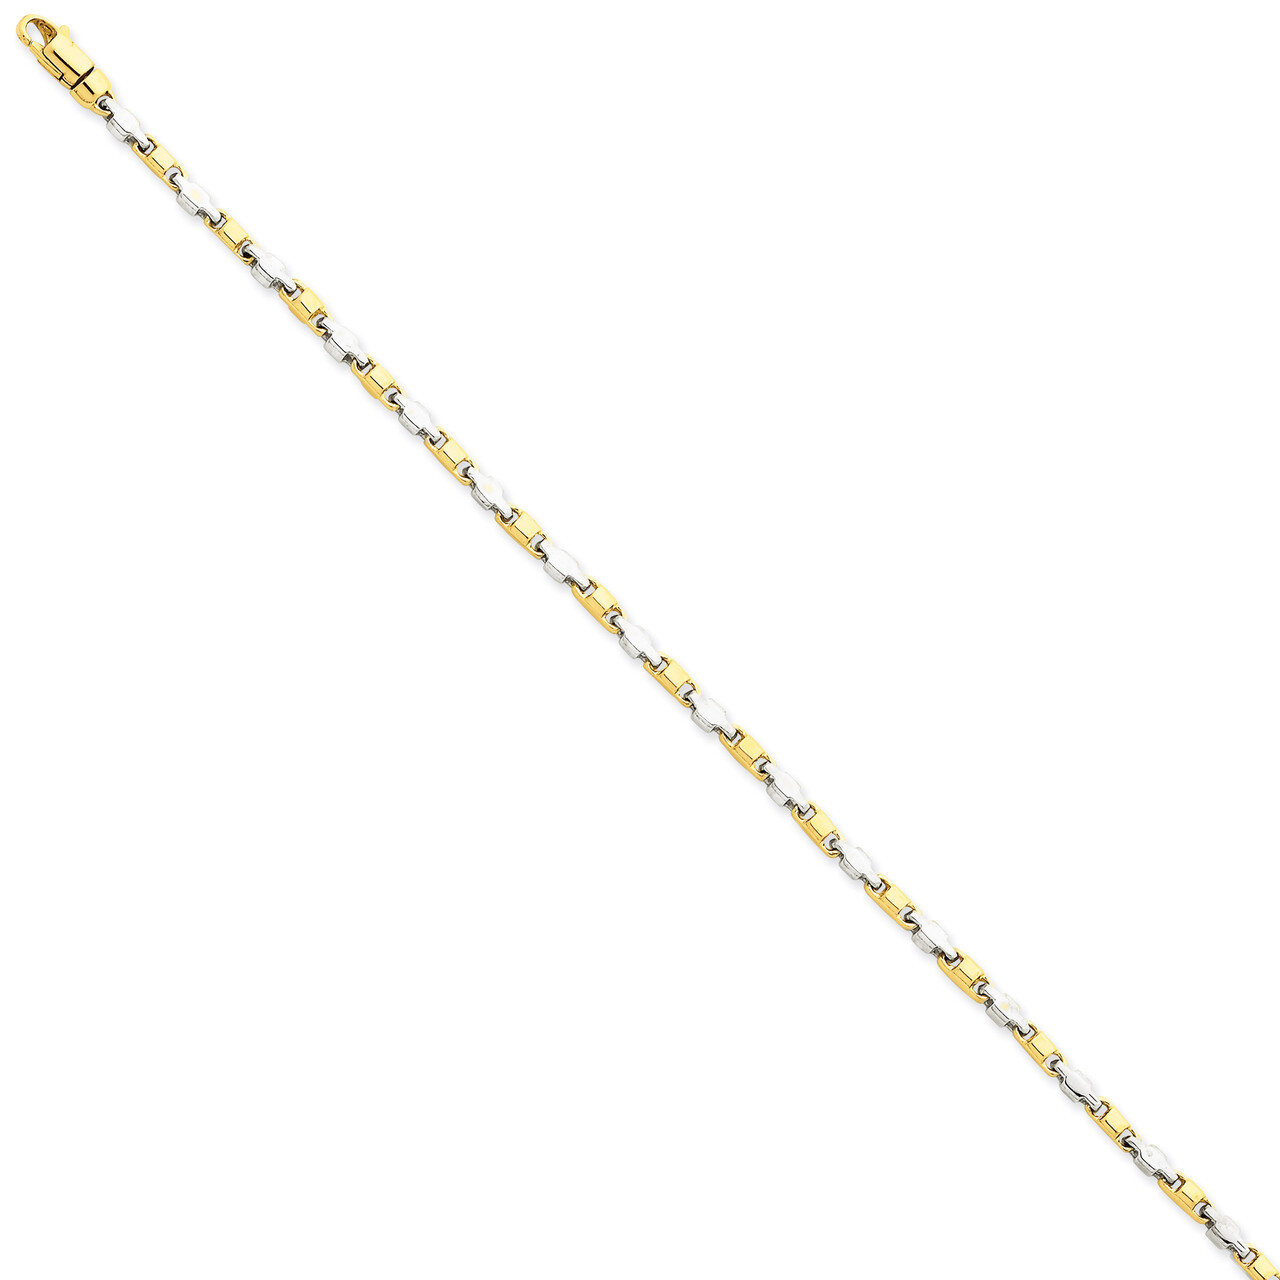 2.25mm Fancy Link Chain 18 Inch 14k Two-Tone Gold LK694-18